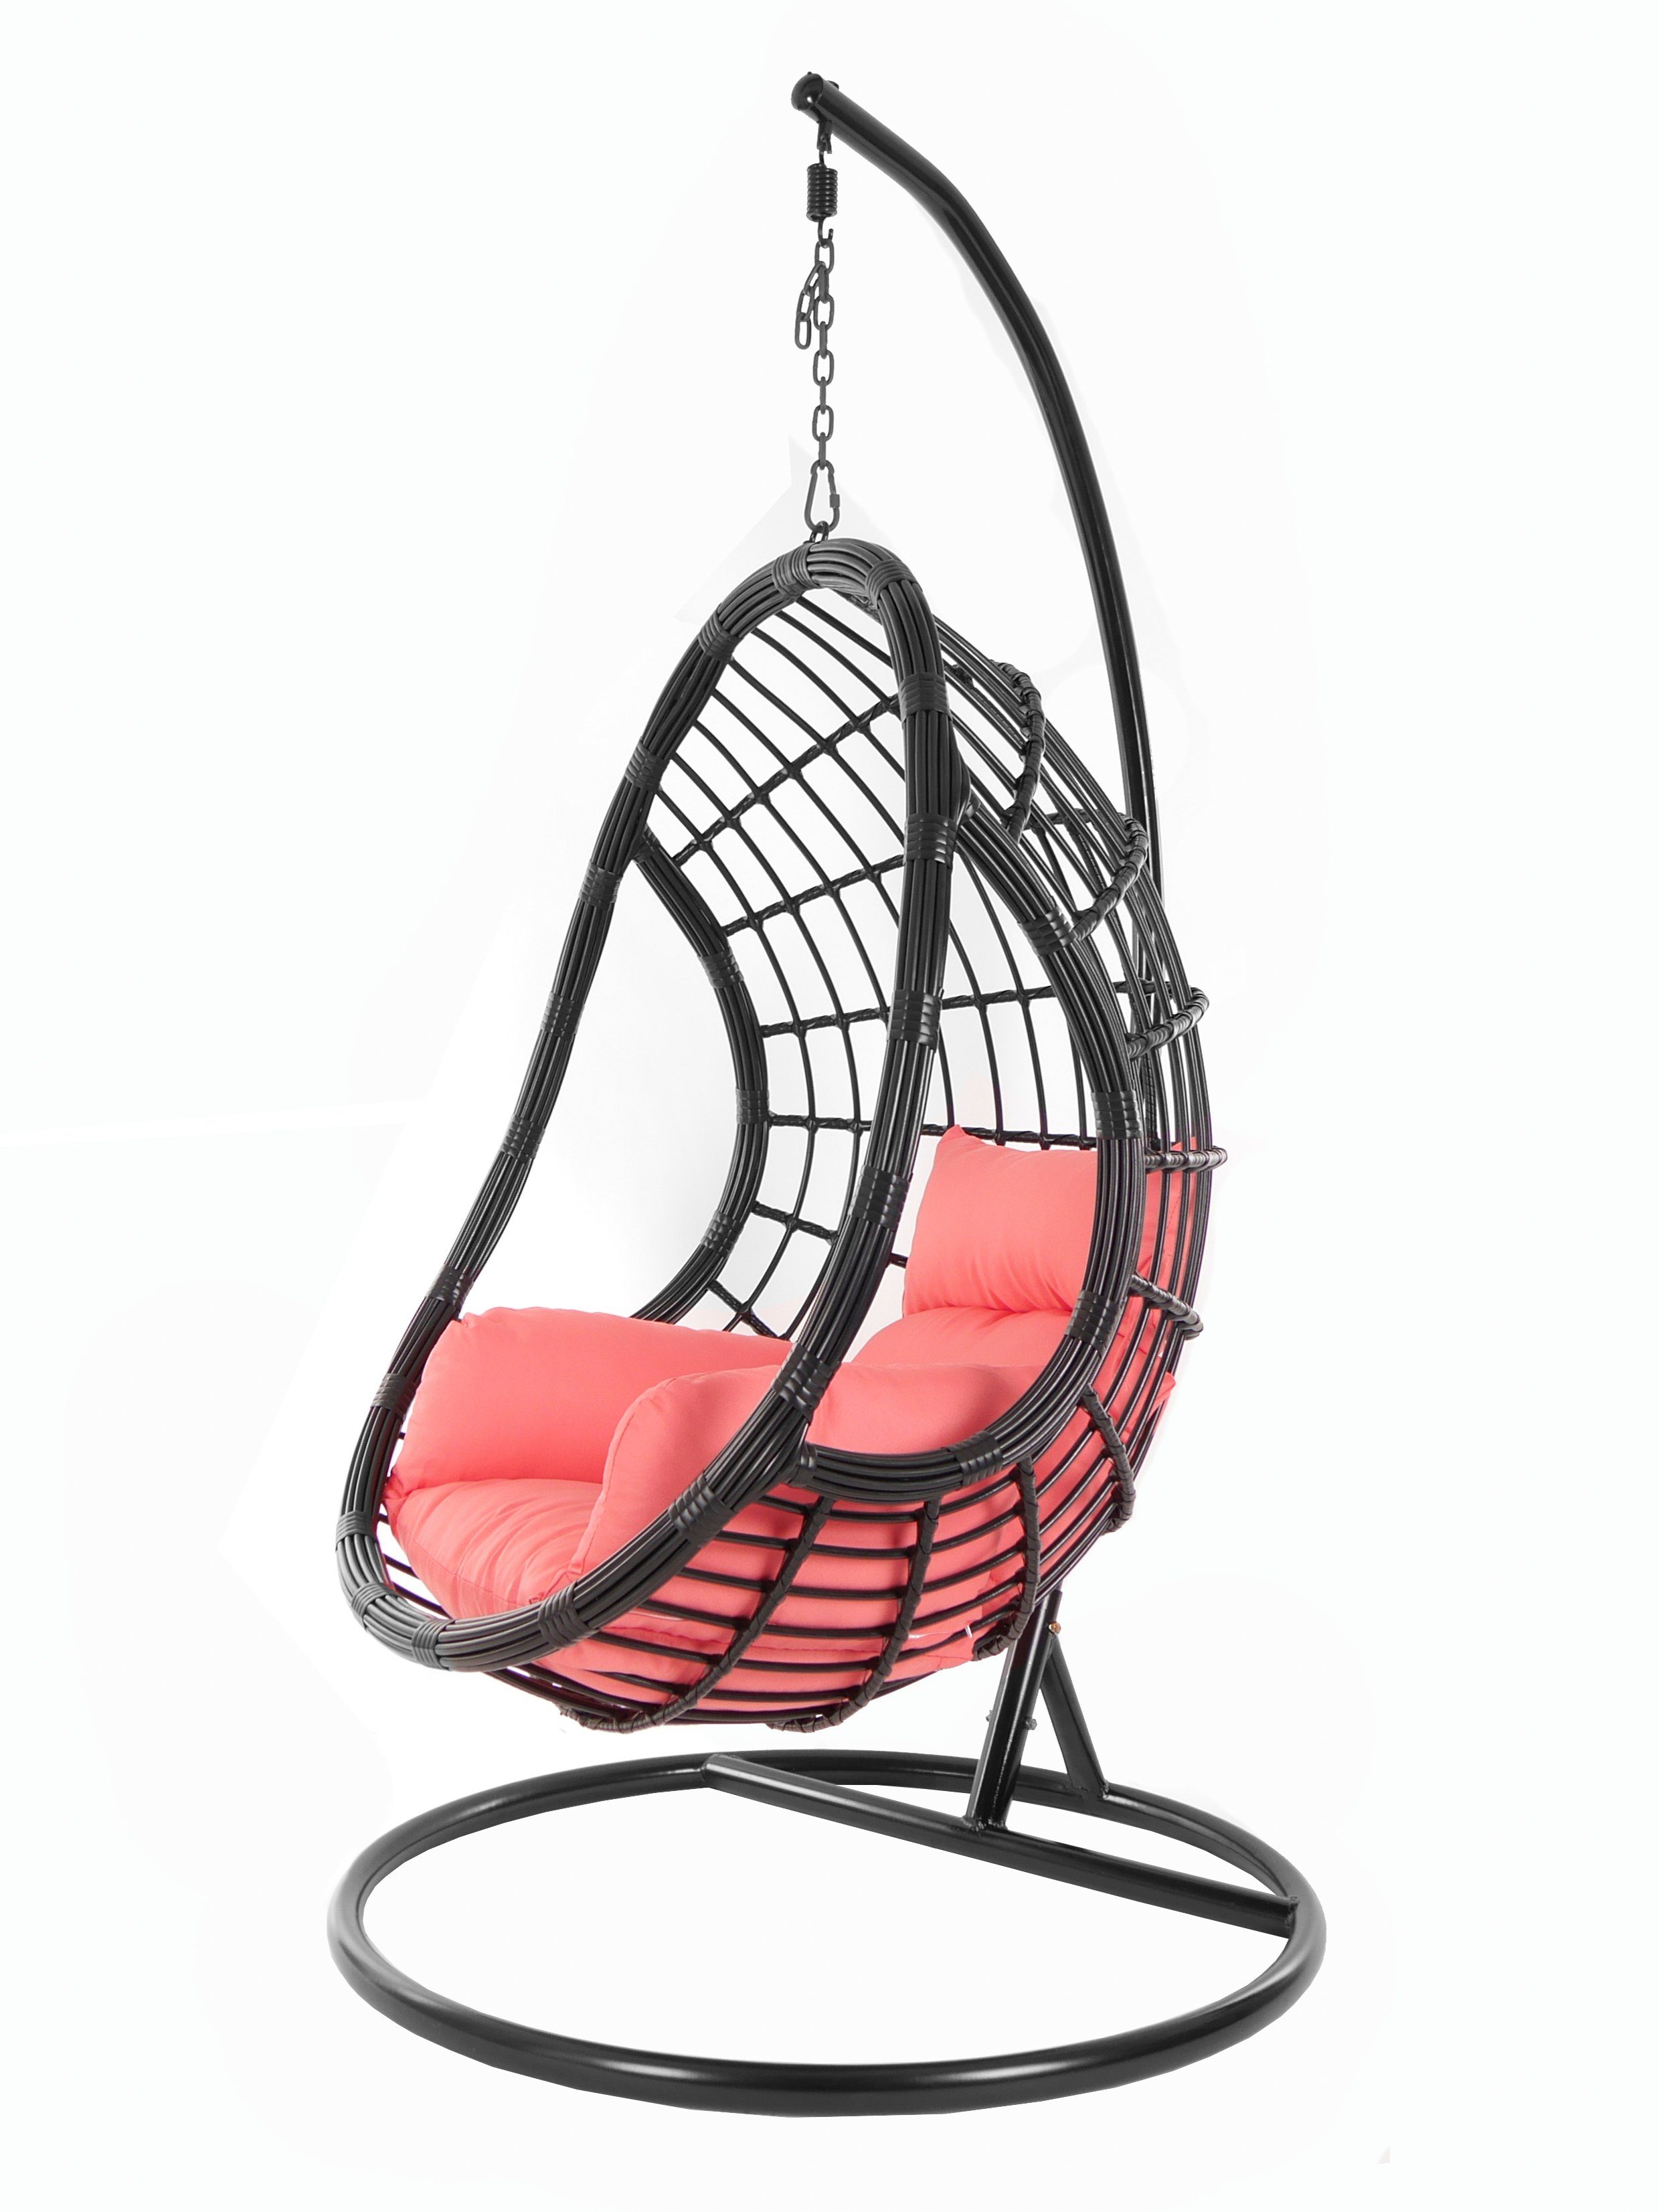 KIDEO Hängesessel PALMANOVA black, Schwebesessel, Swing Chair, Hängesessel mit Gestell und Kissen, Nest-Kissen coral (3400 coral)